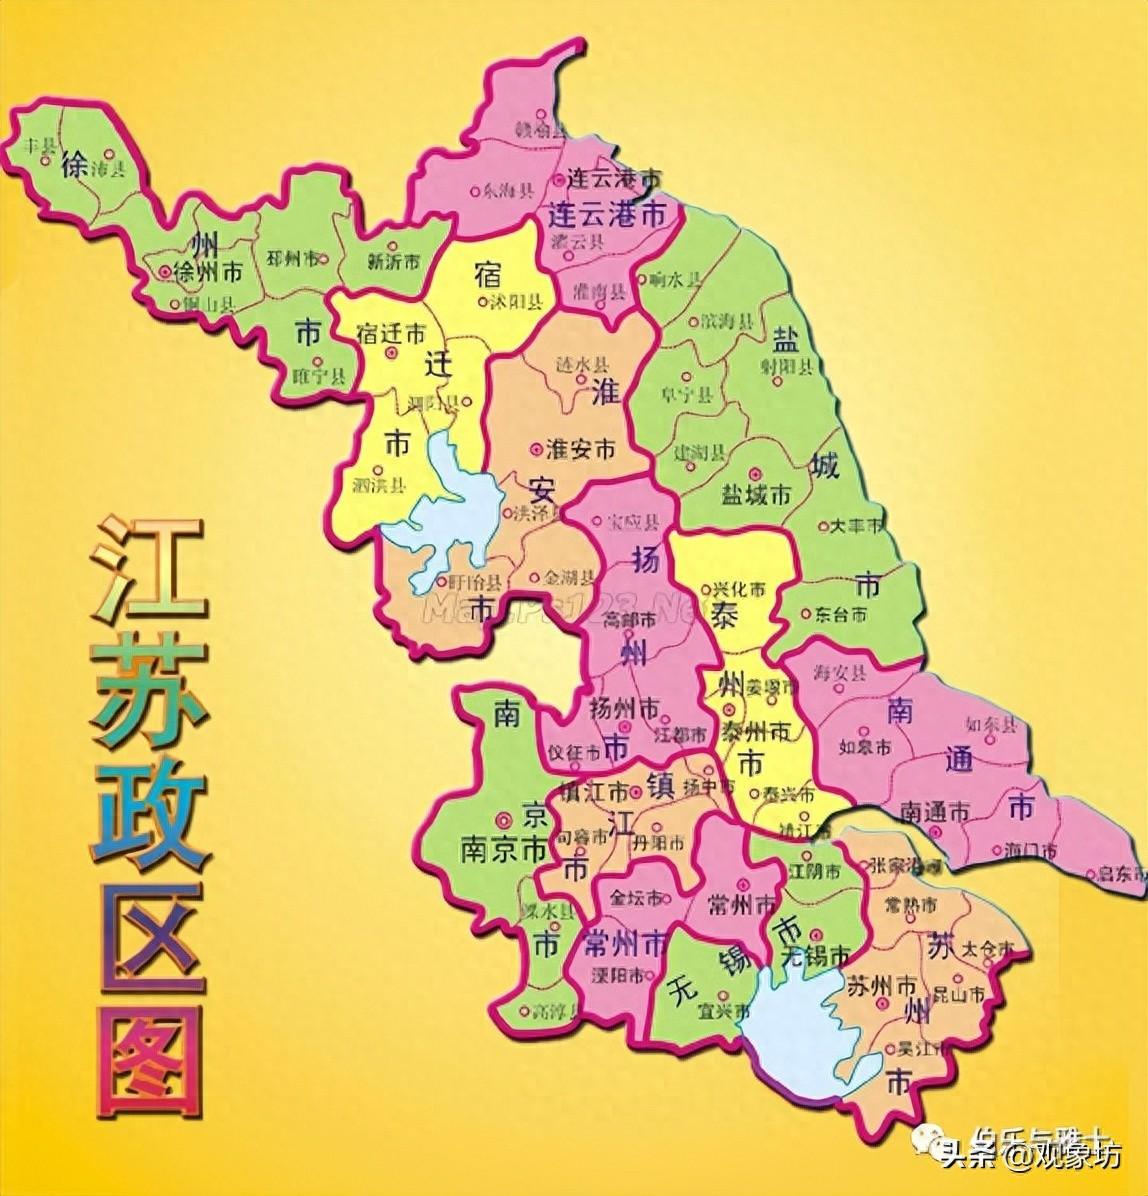 江苏区划调整构想：南京、镇江合并，盐城一分为二，徐州划入山东